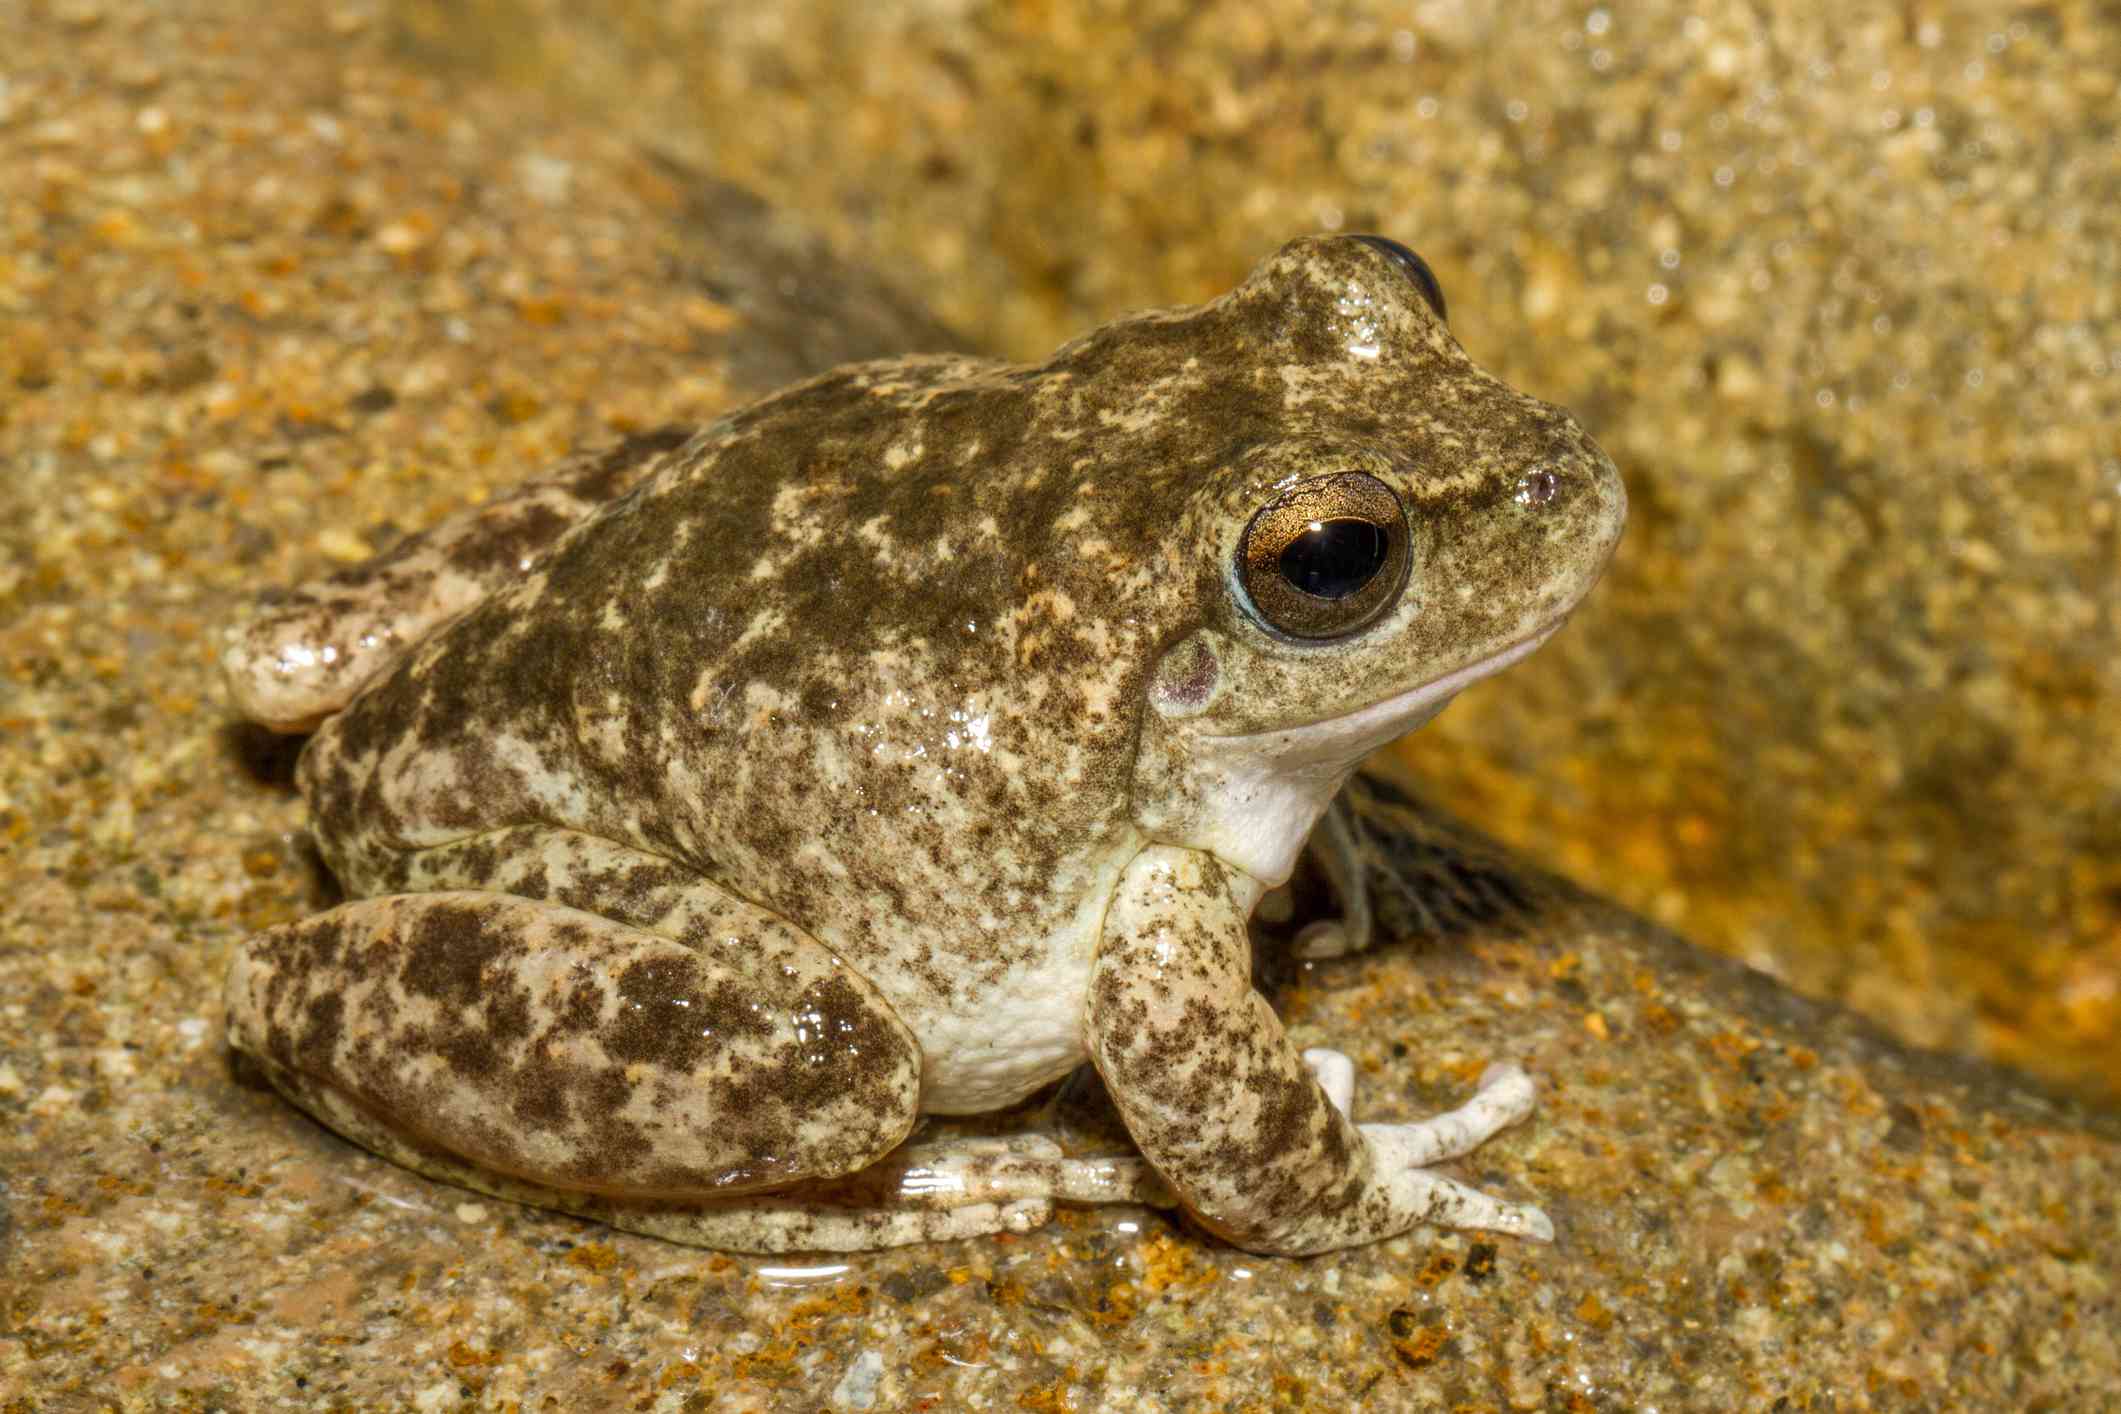 Booroolong青蛙深色褐色斑点的浅棕色的大青蛙坐在一个日志”width=